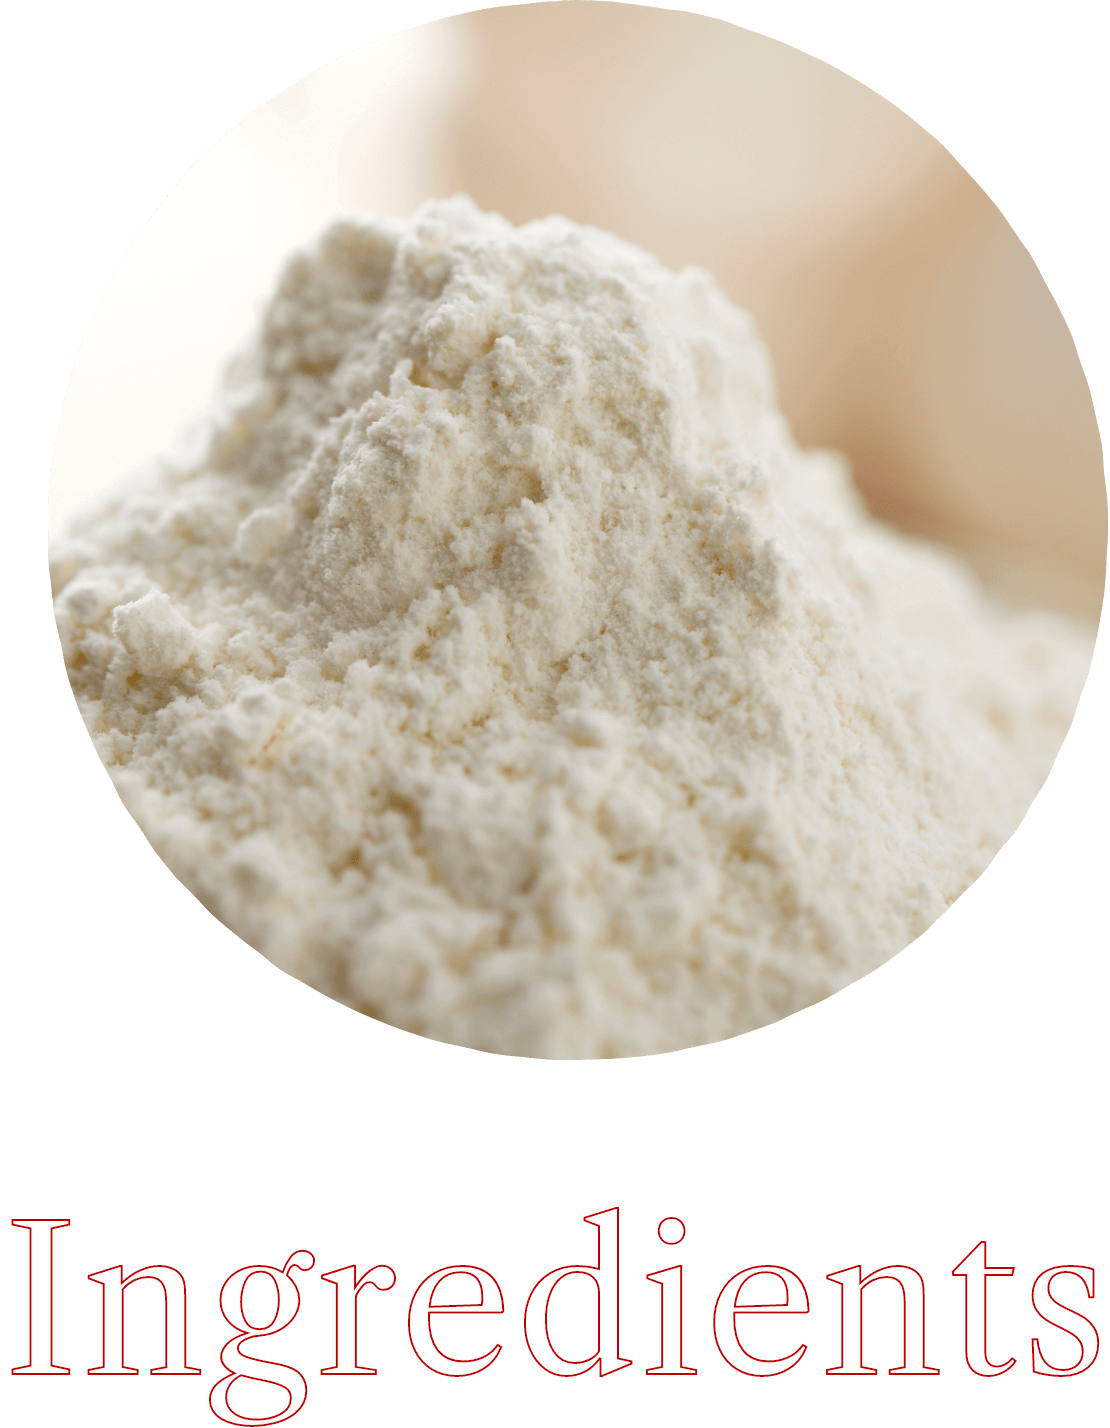 口溶けの良い北海道産小麦粉きたほなみを使用